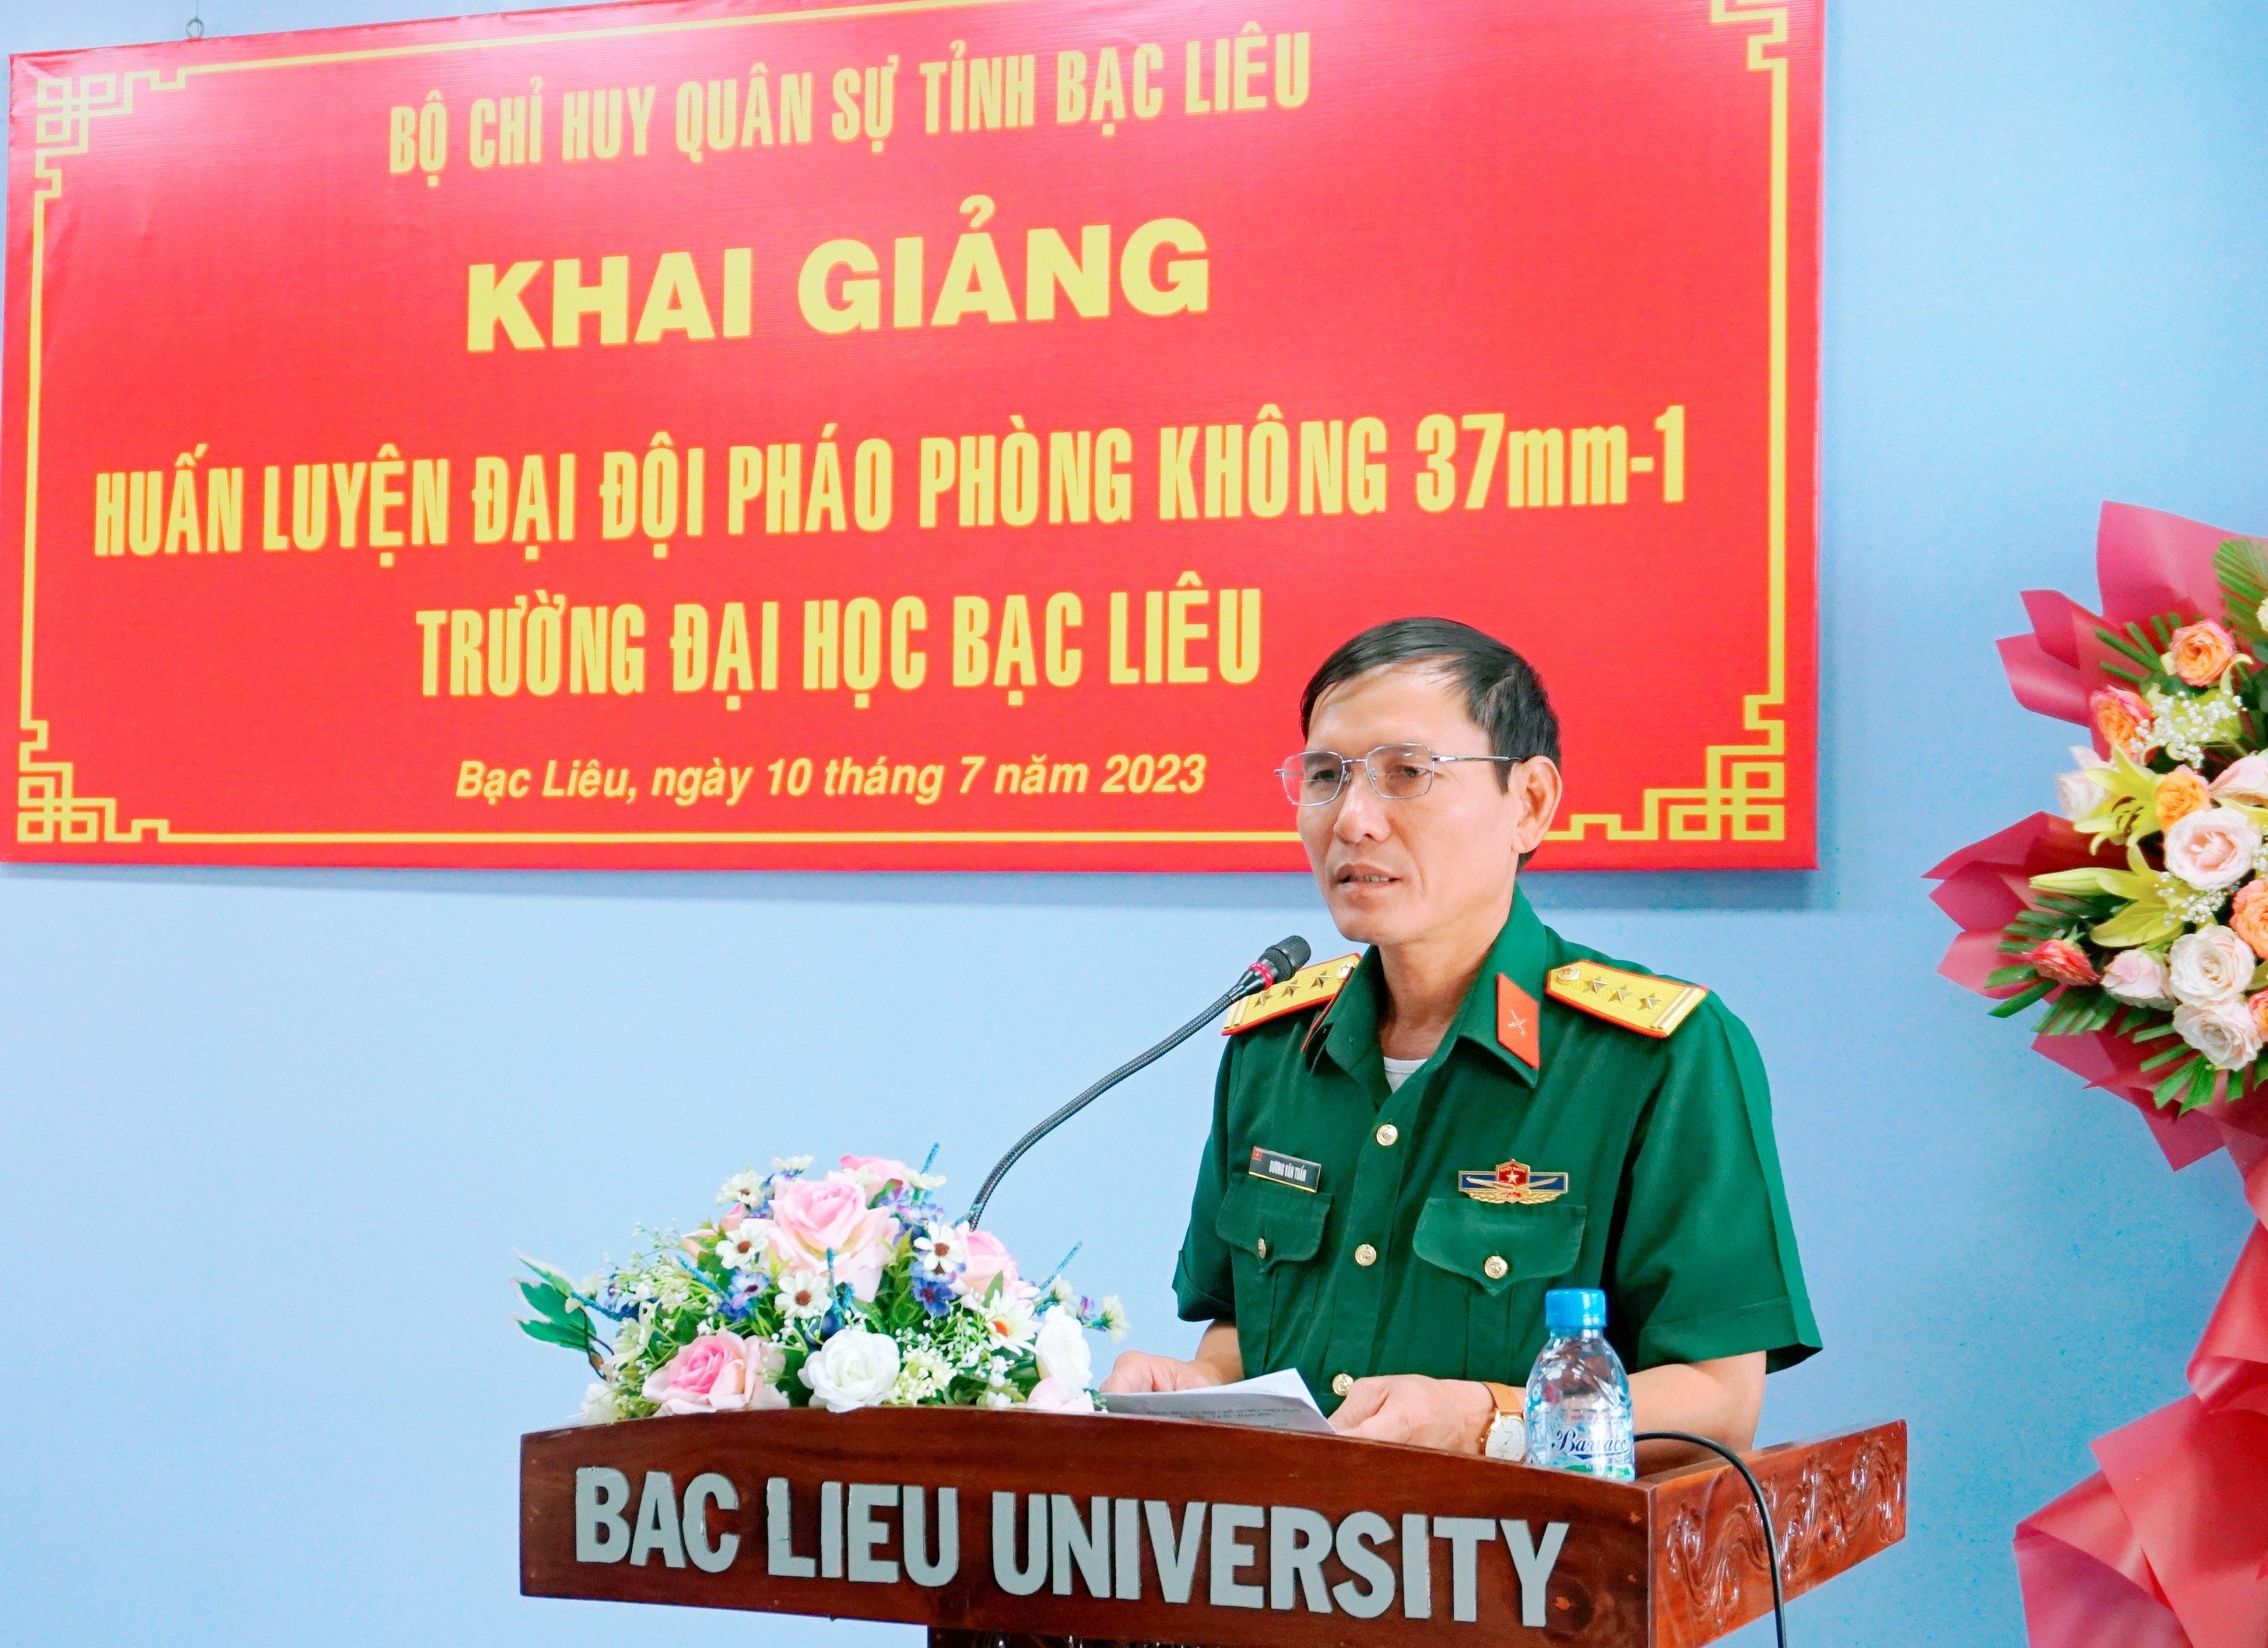 Khai giảng Huấn luyện Đại đội Pháo phòng không 37mm-1N Trường Đại học Bạc Liêu năm 2023